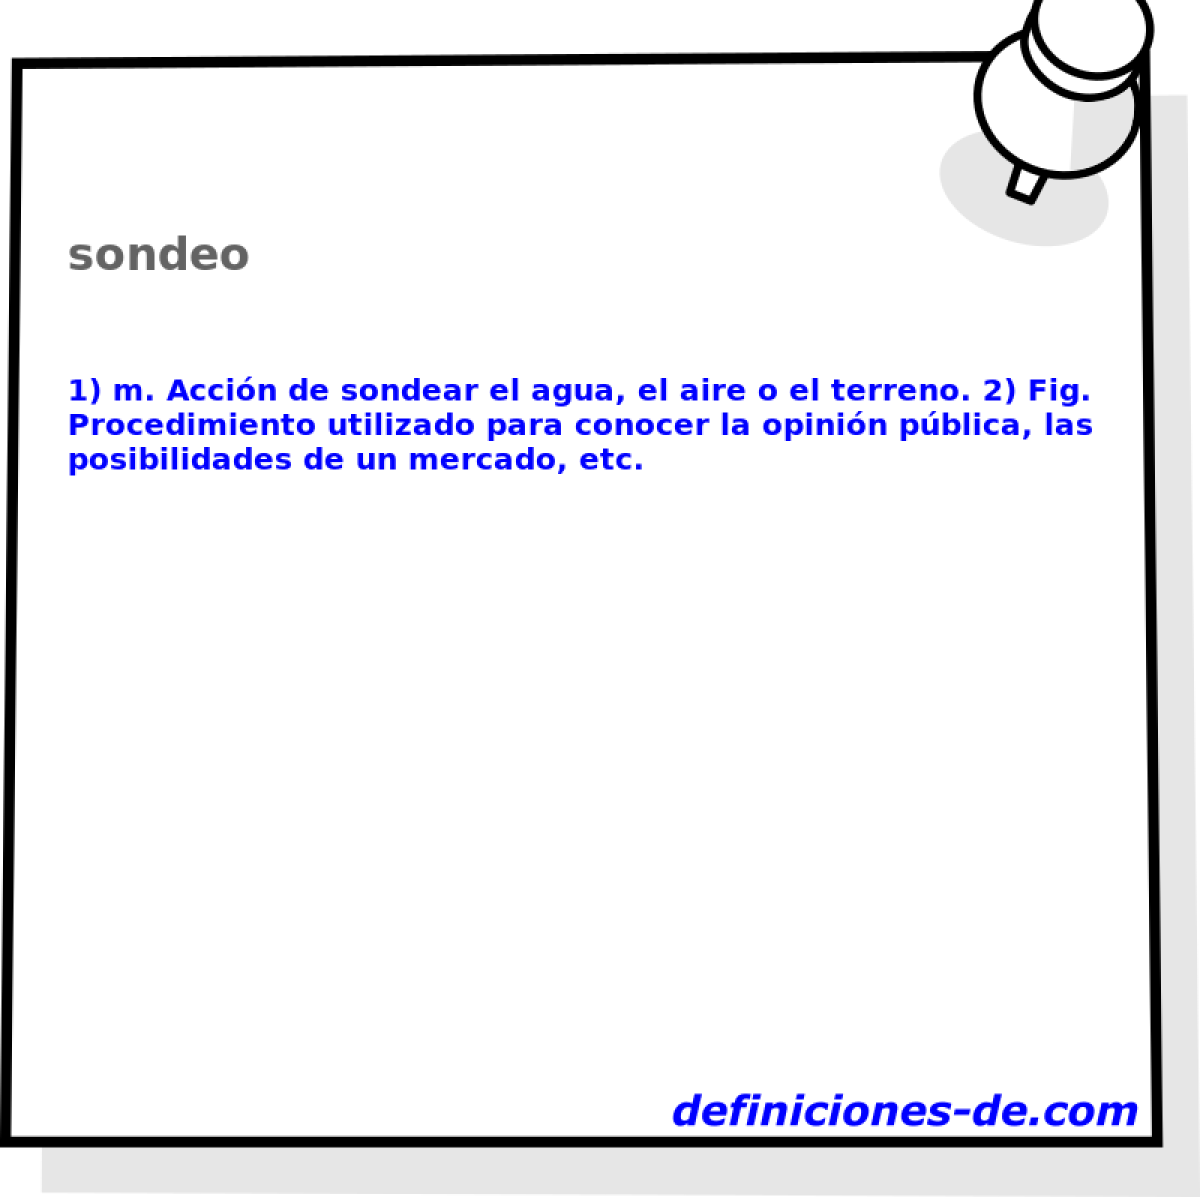 sondeo 